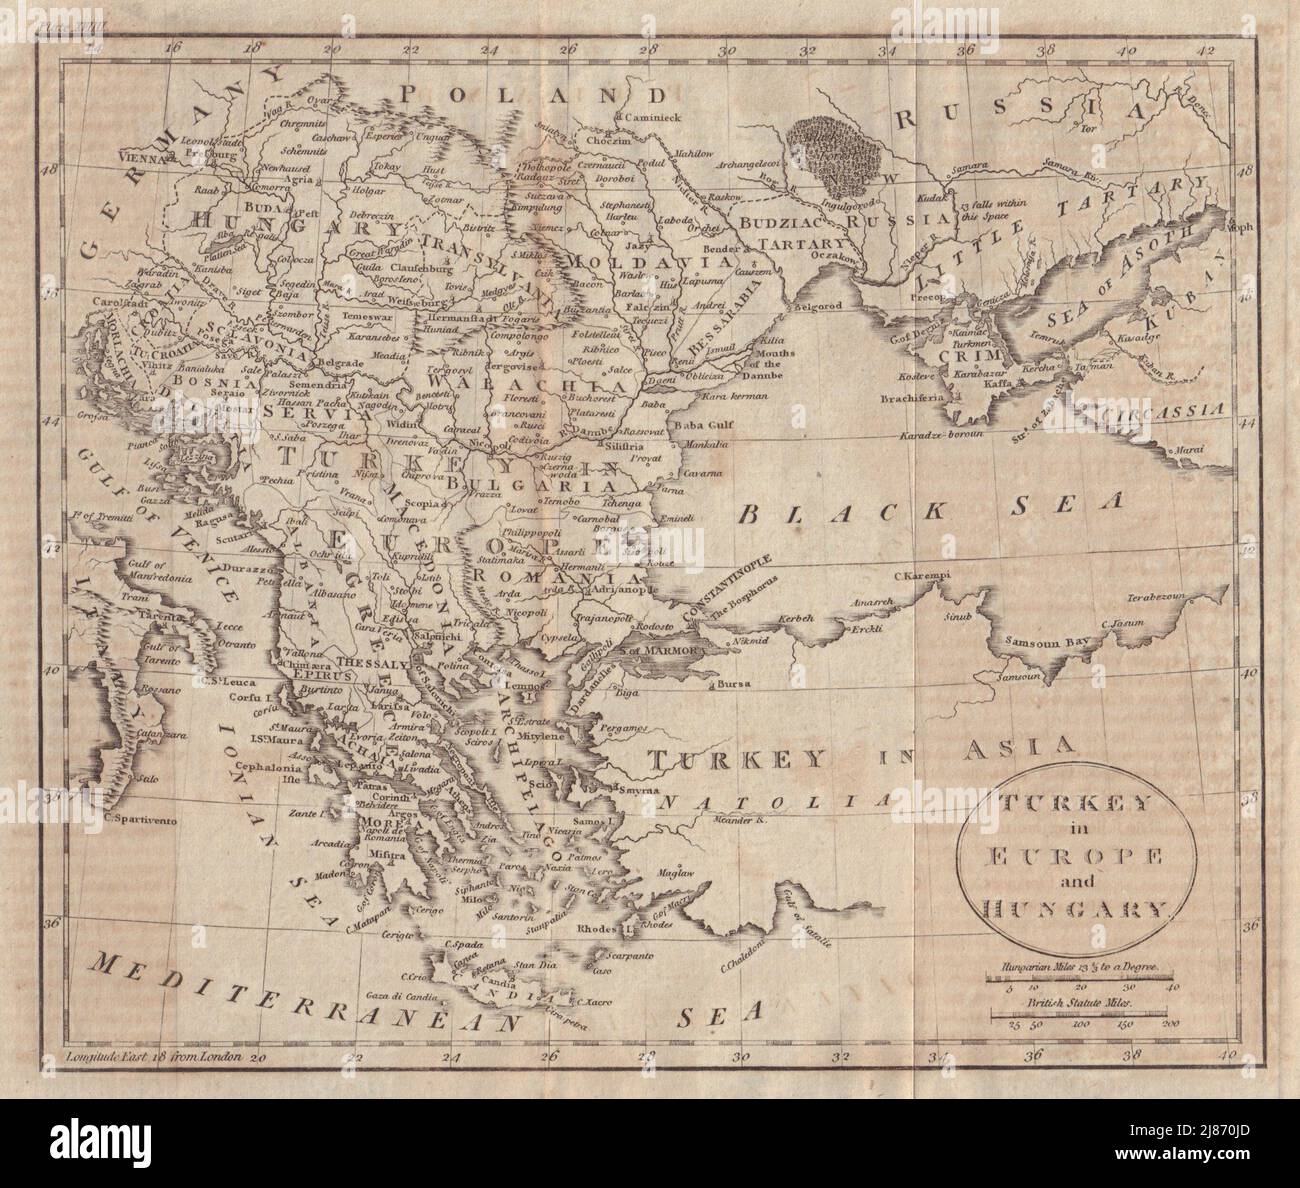 Turchia in Europa e Ungheria. Balcani Grecia Ucraina. WALKER 1805 vecchia mappa Foto Stock